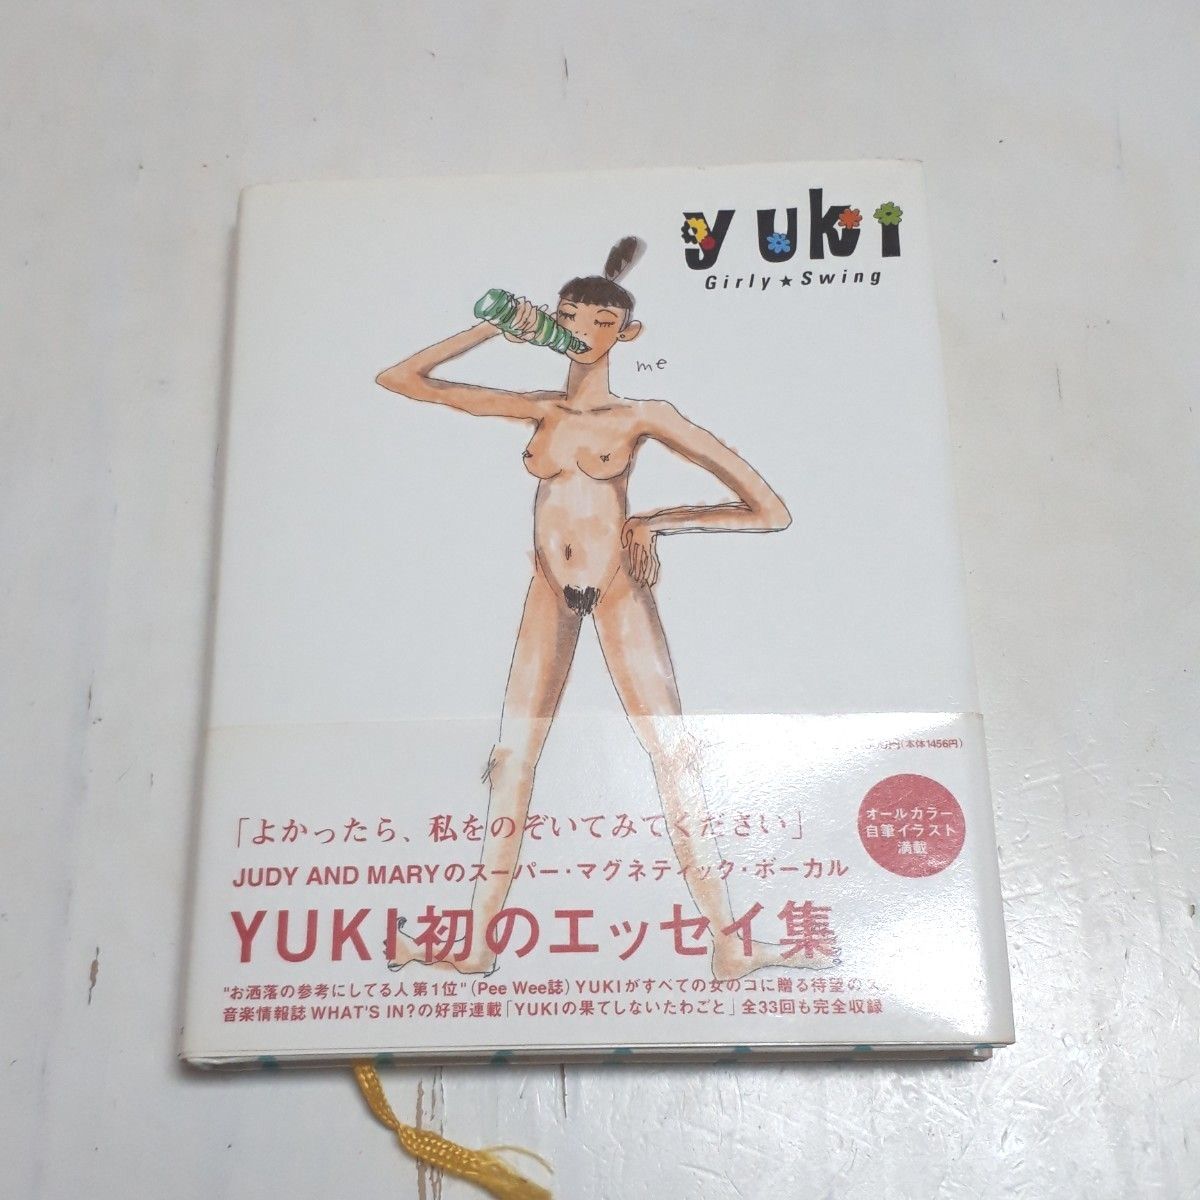 YUKI 初エッセイ 本 Girly★swing Yuki